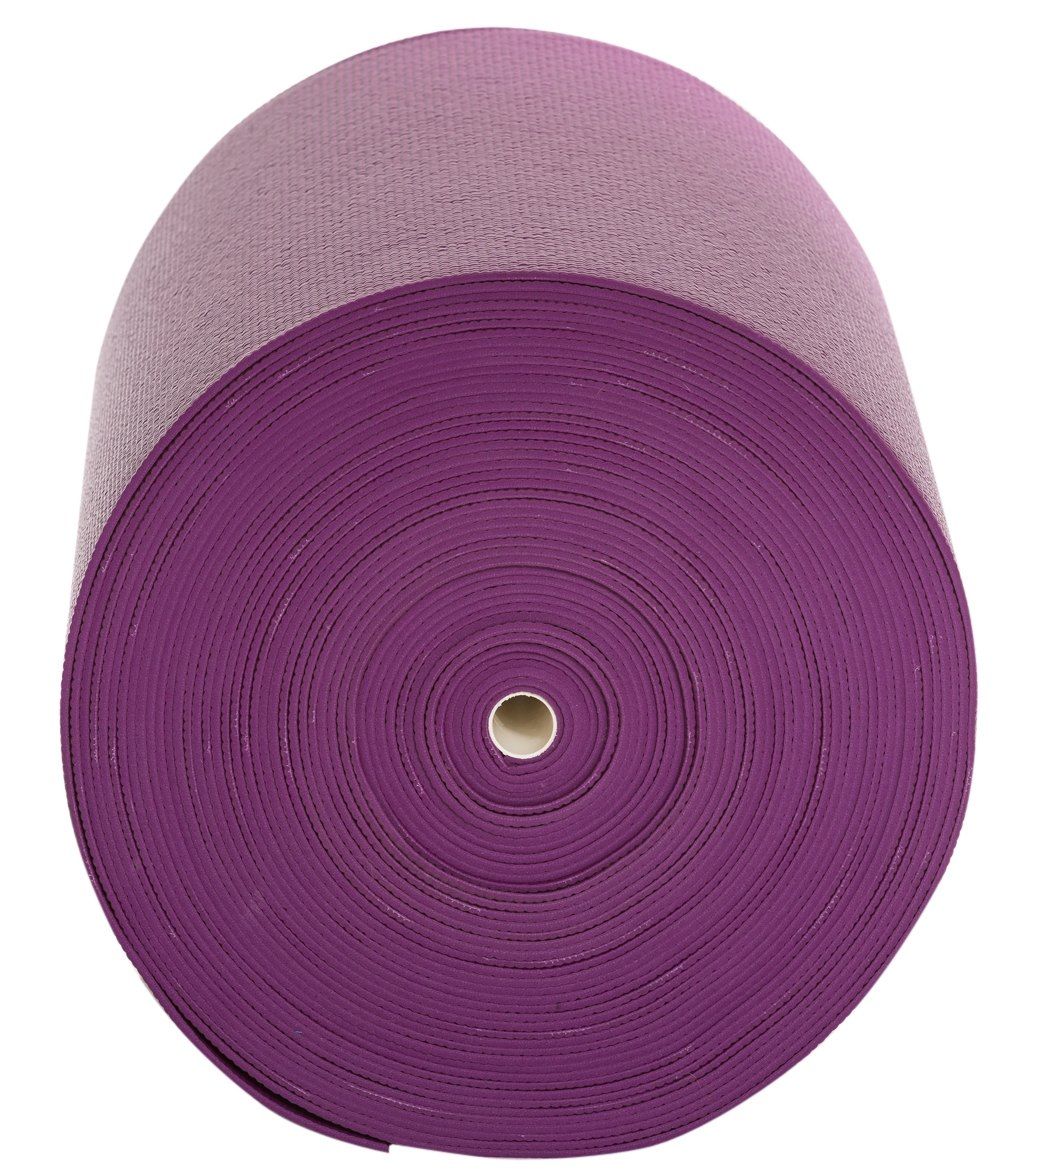 Everyday Yoga Round Yoga Mat 6' diameter 5mm